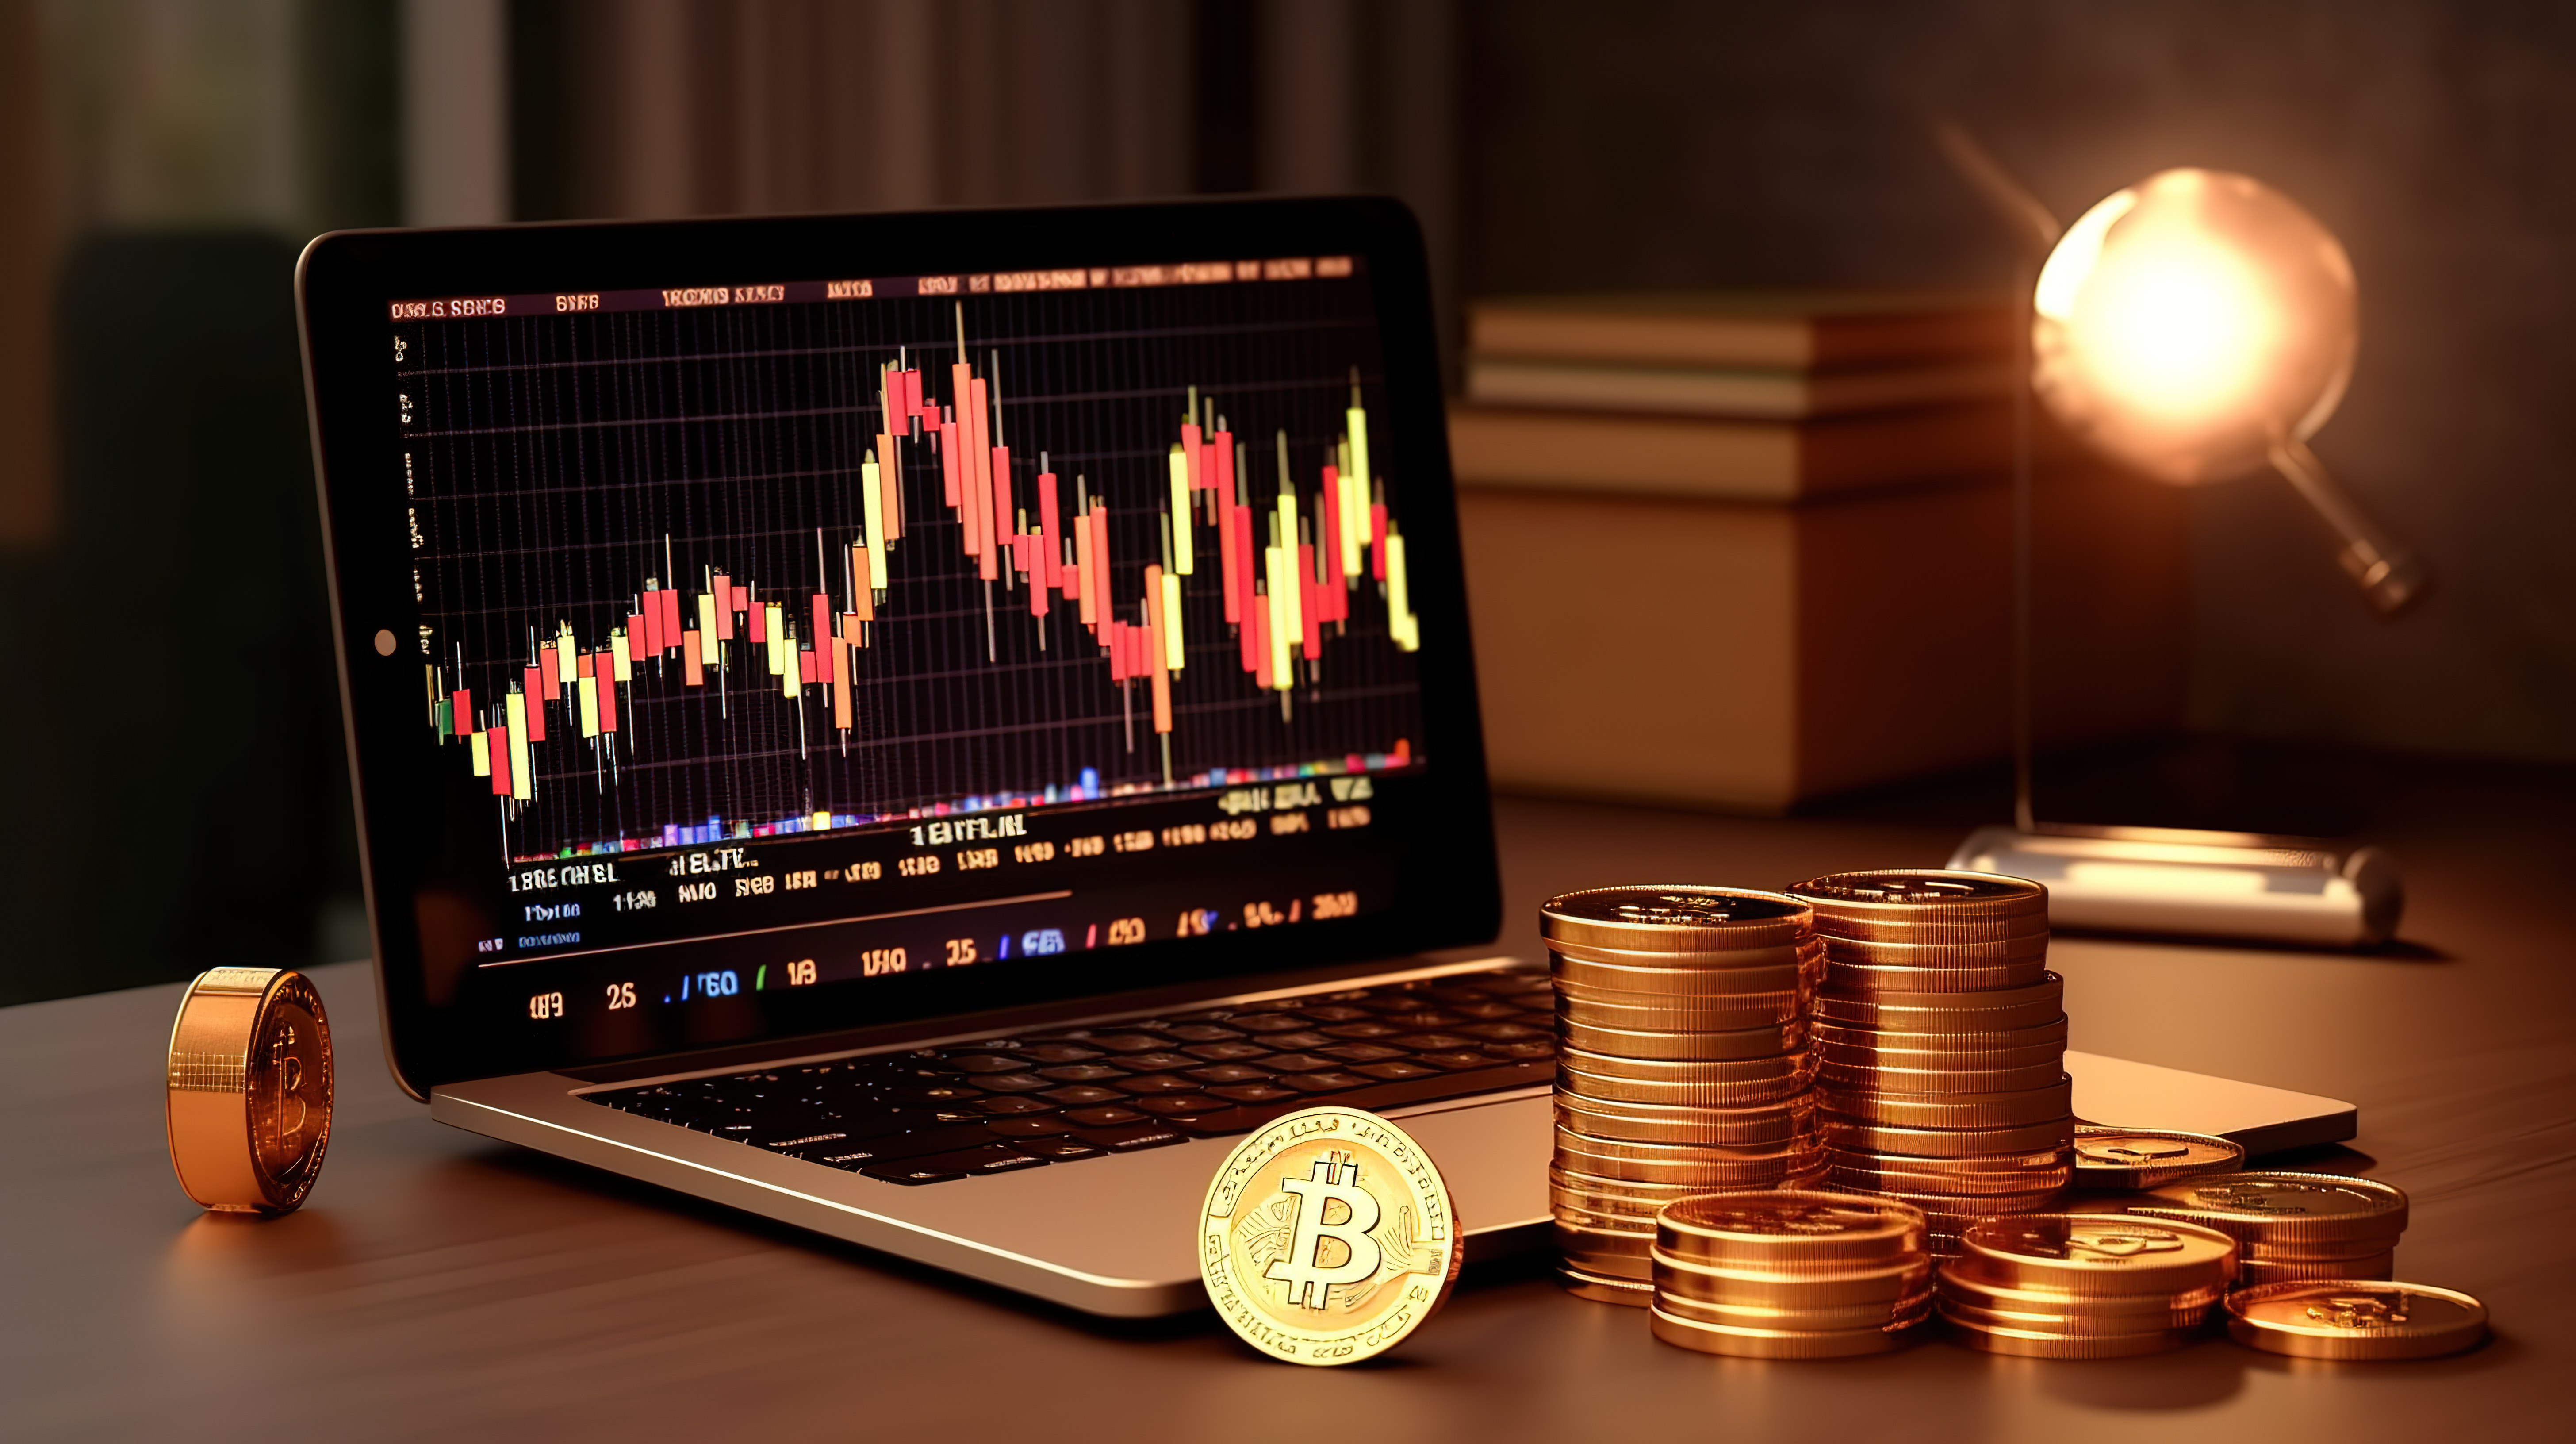 金融投资符号的 3D 插图，包括计算机上的比特币烛台图和硬币图片